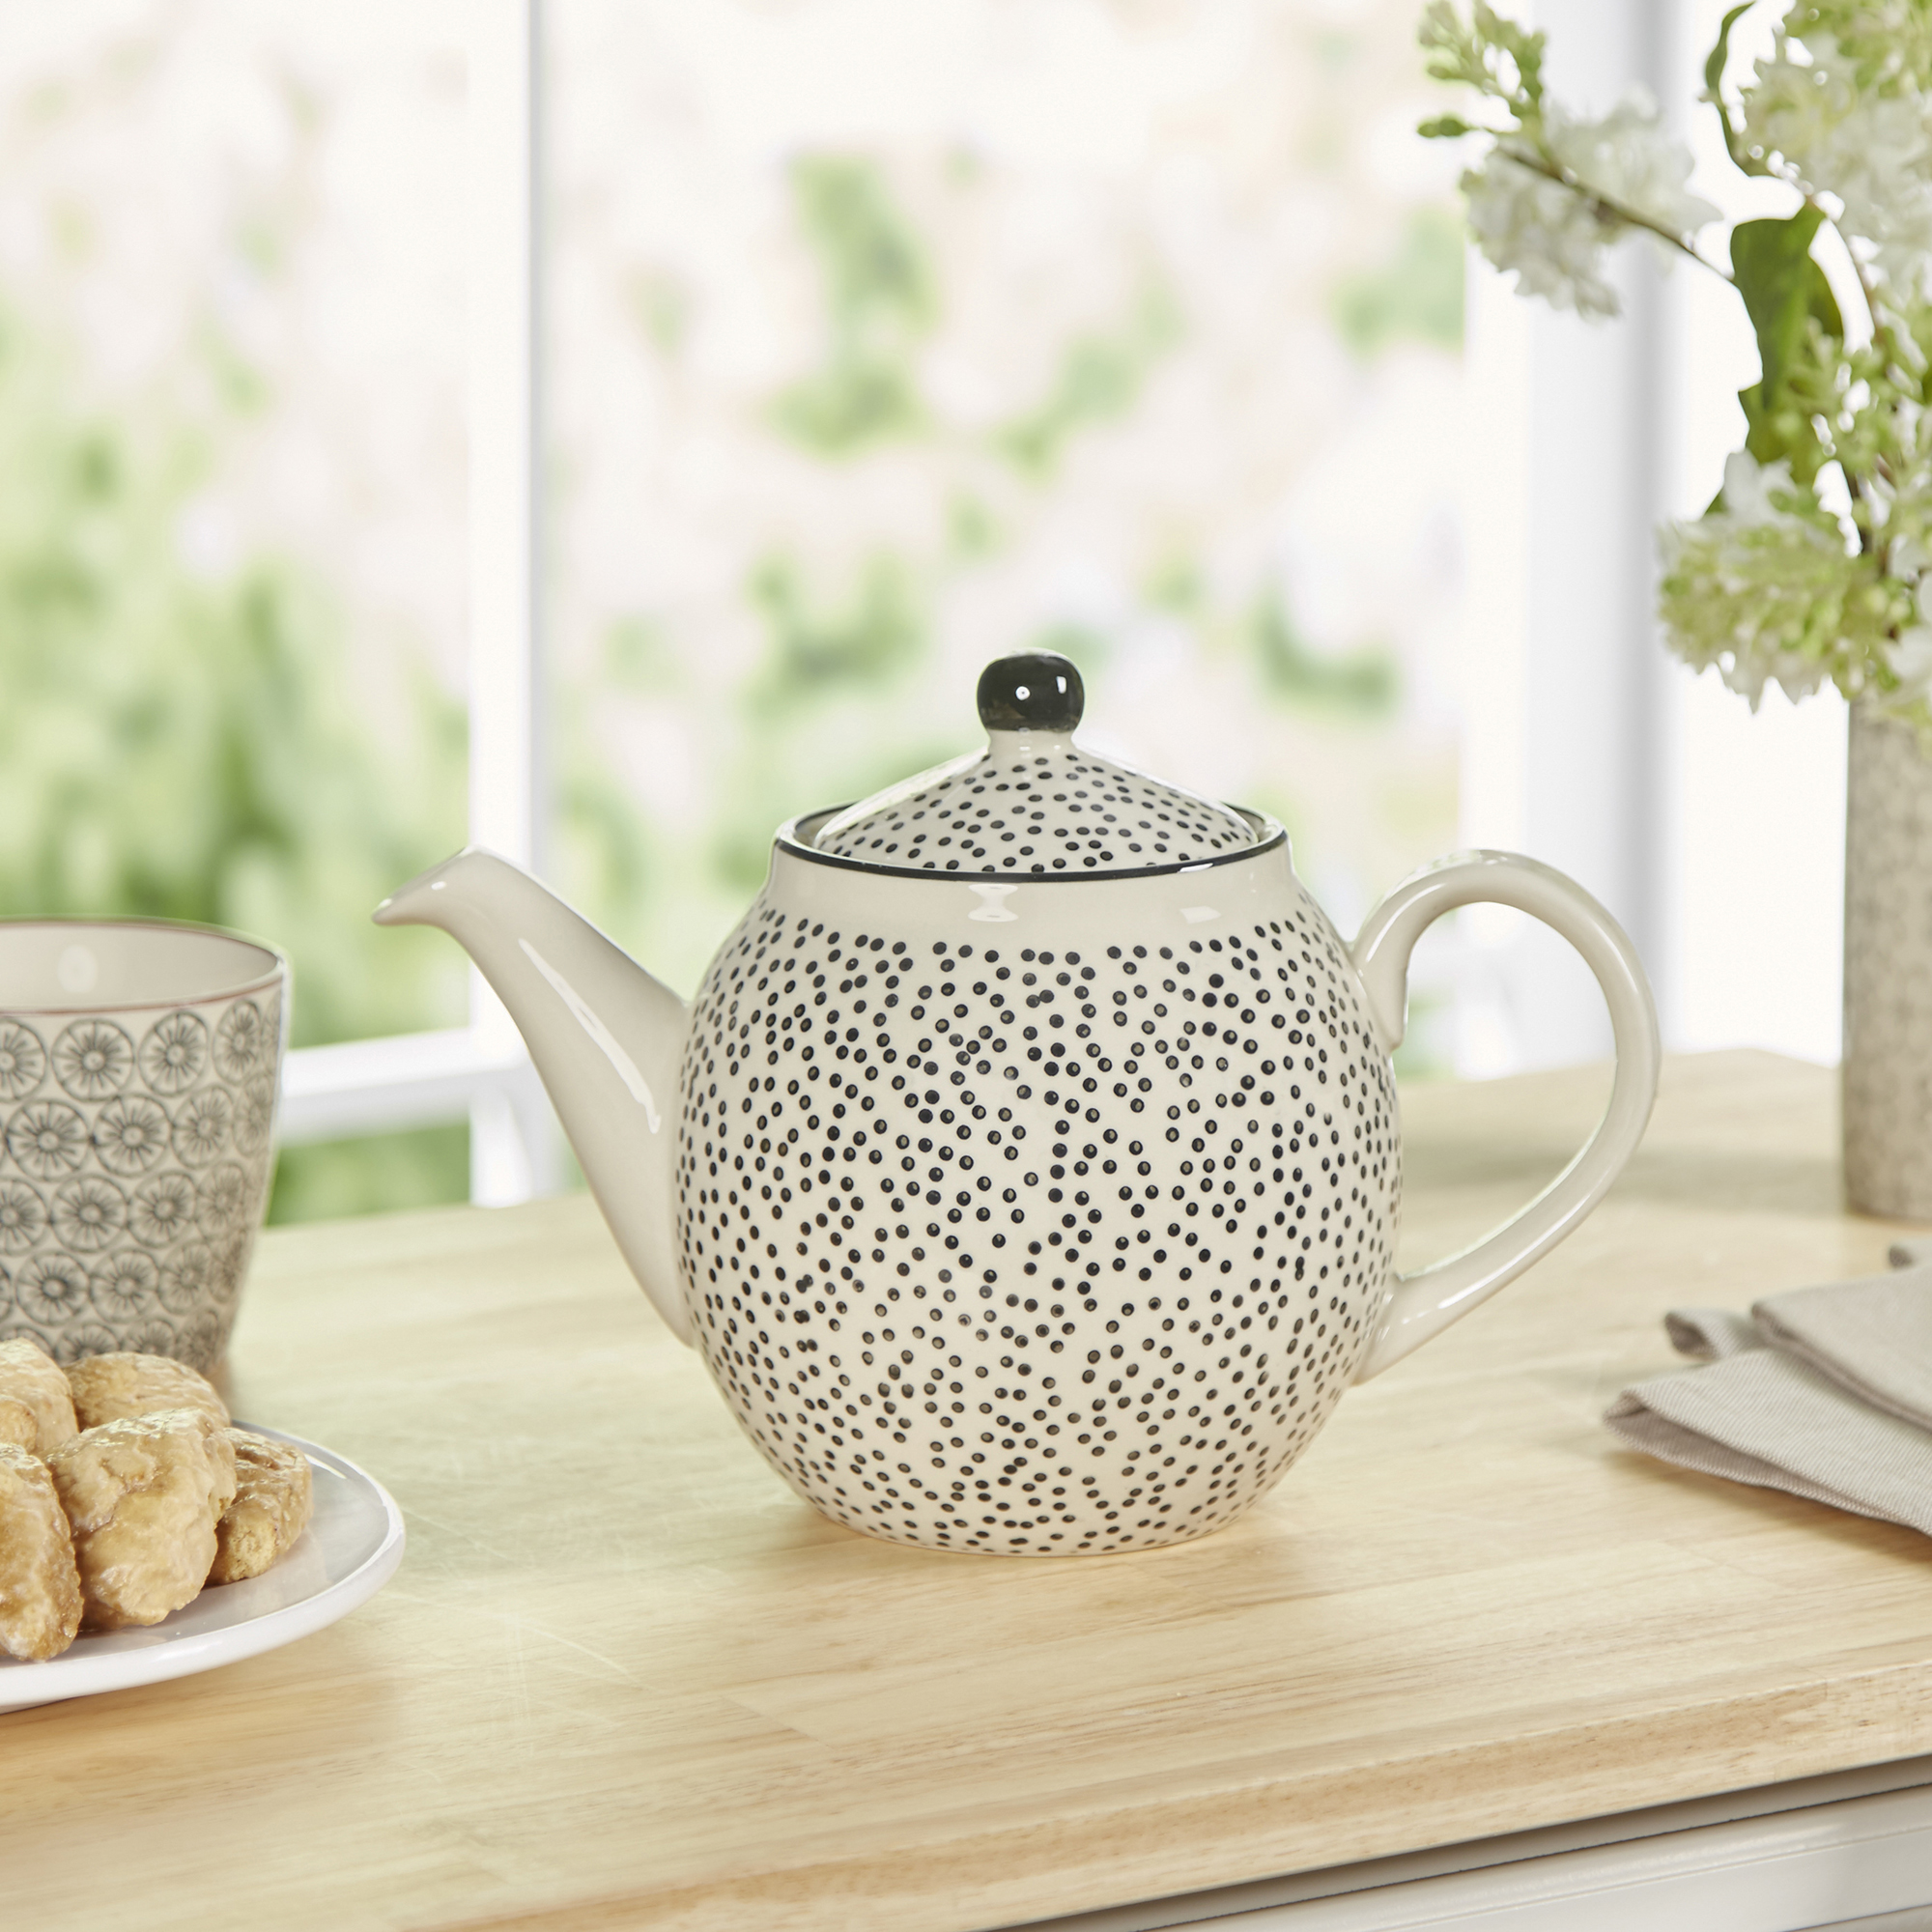 Best Modern Tea Sets With Luxury Interior